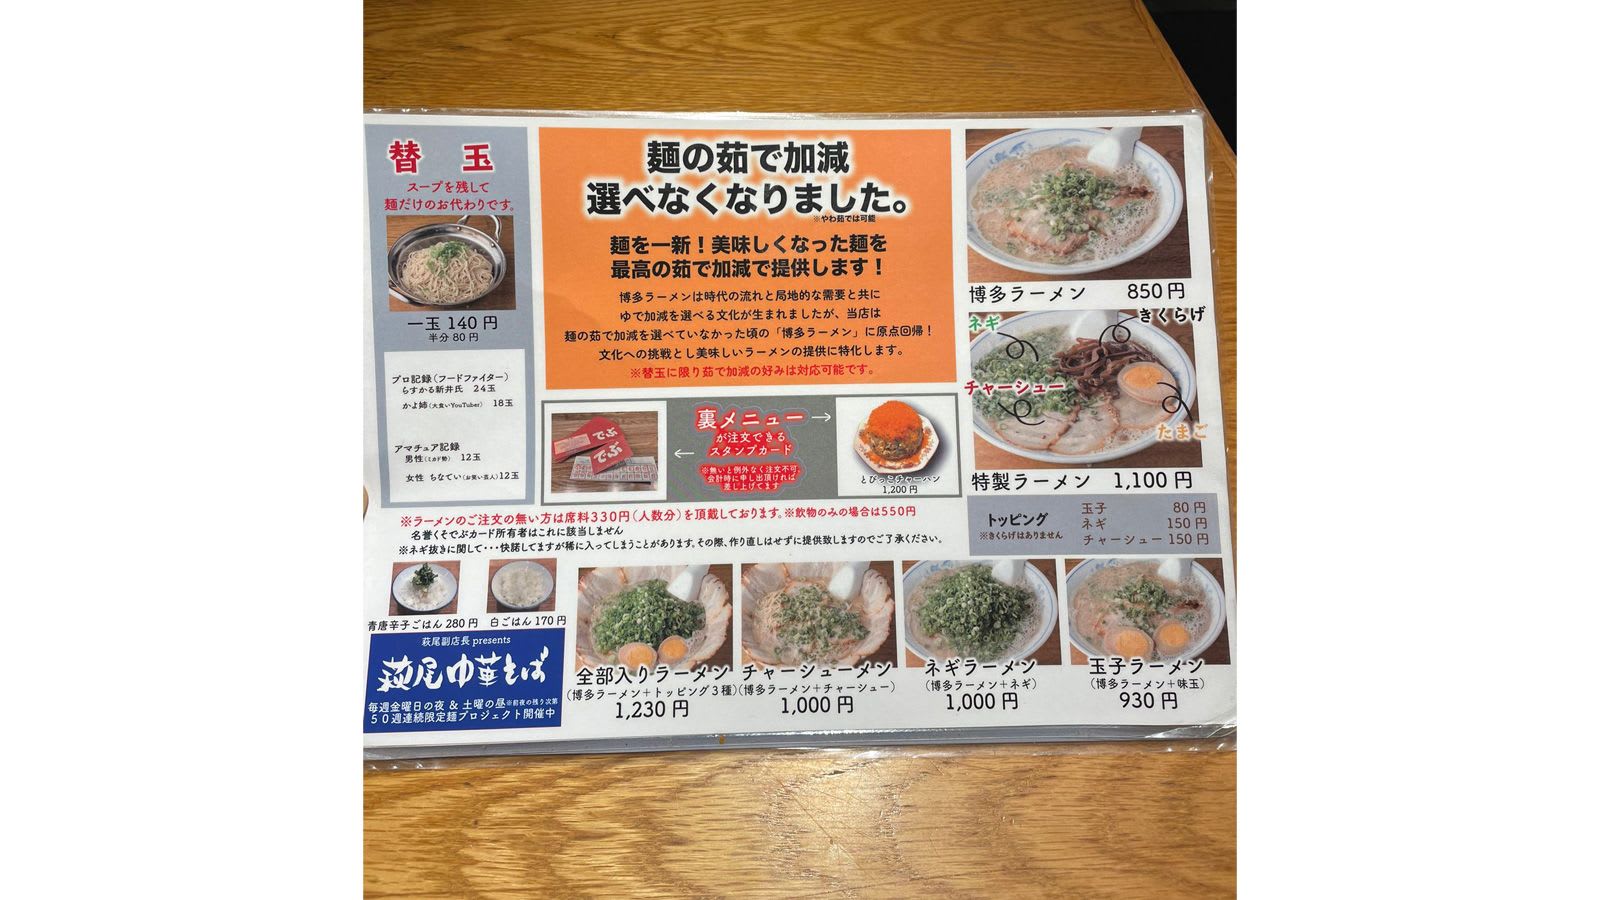 مطعم رامن في اليابان يحظر استخدام الهواتف أثناء الطعام